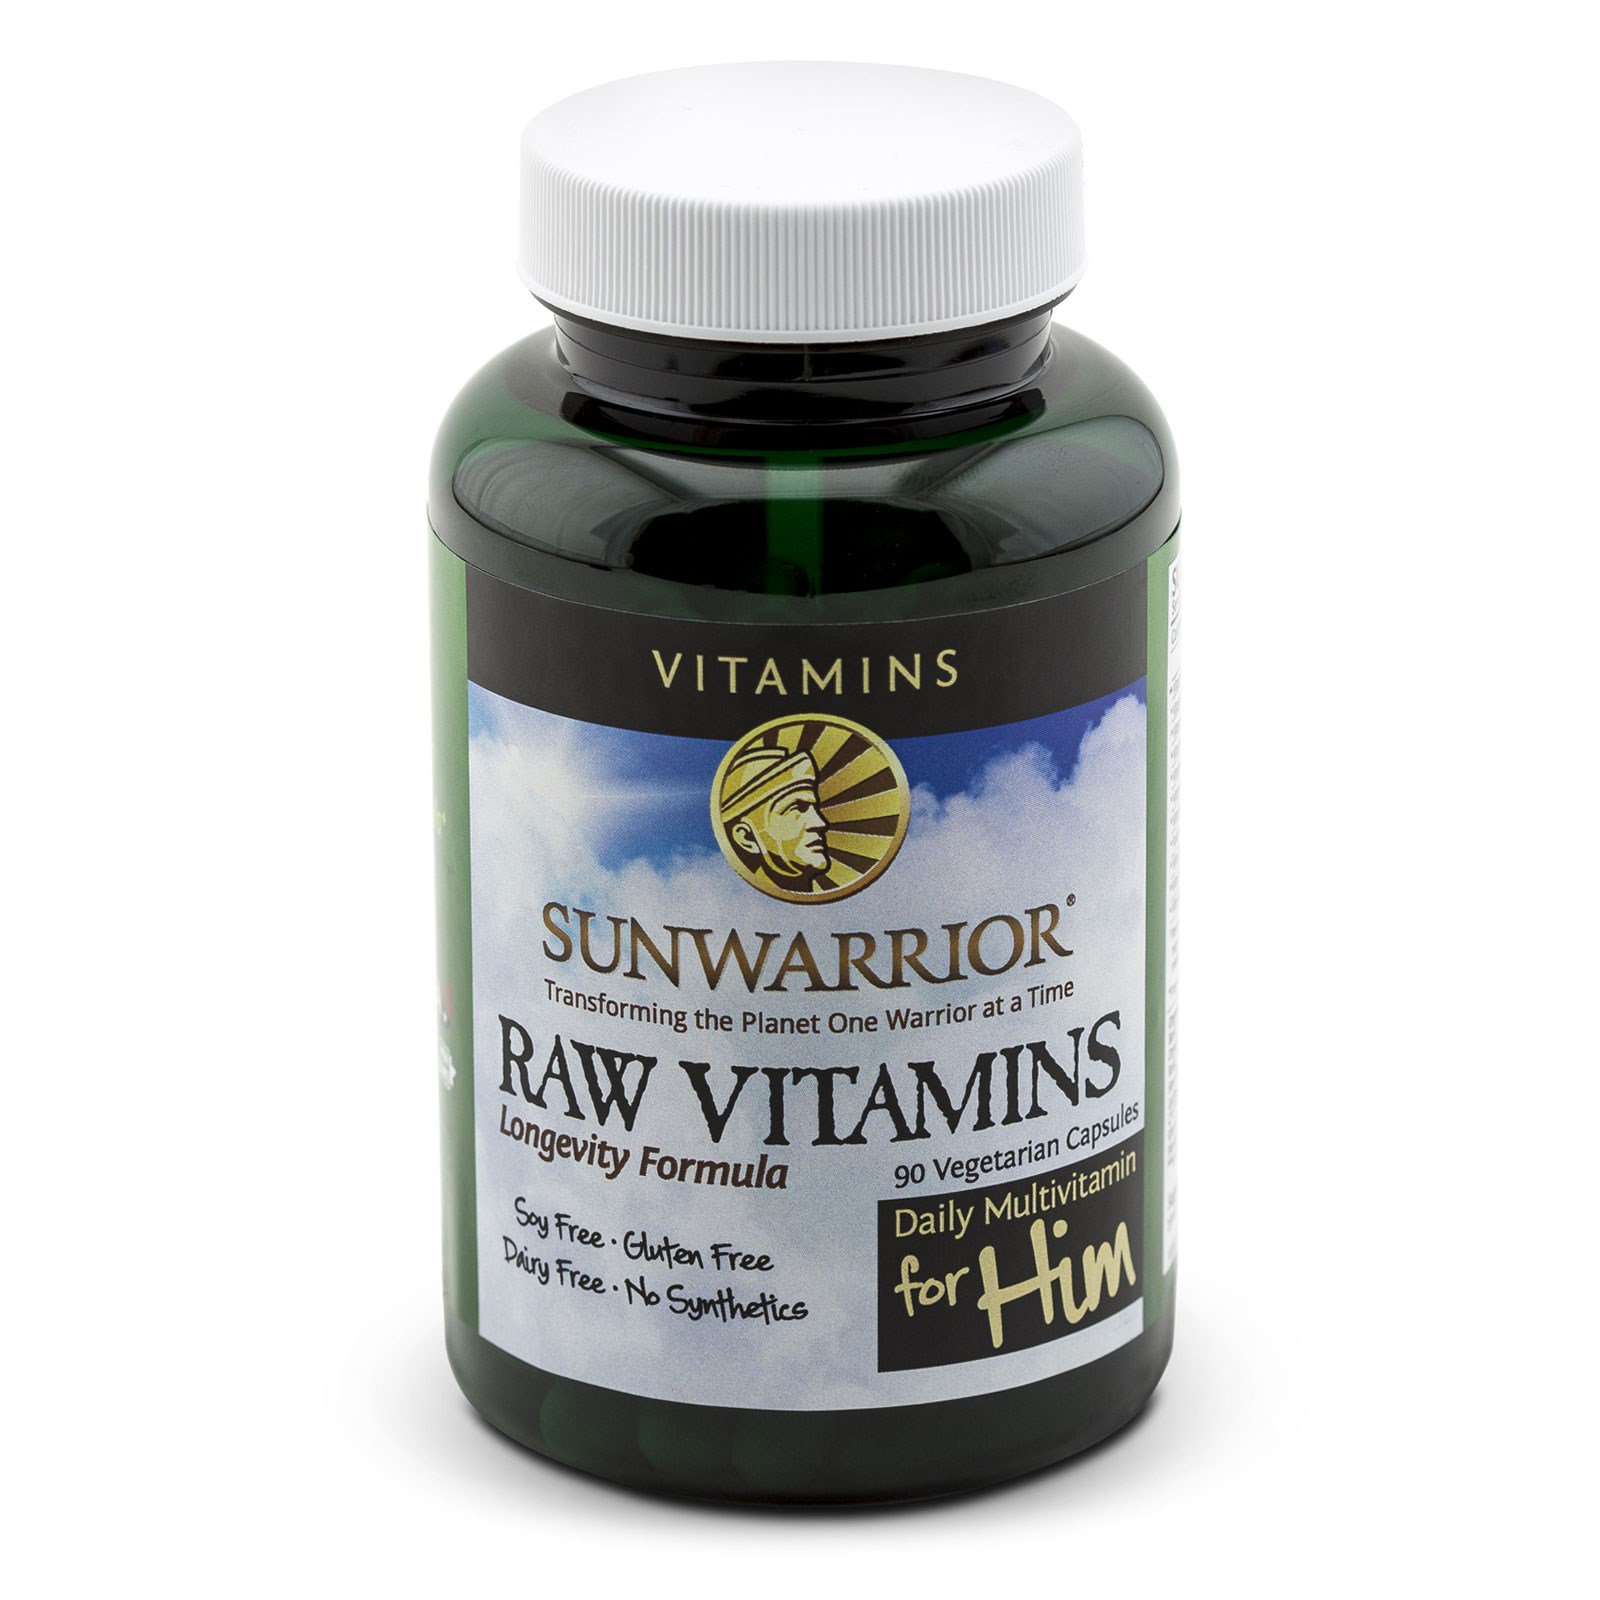 Sunwarrior, Сырые витамины, ежедневный мультивитамин для него, 90 капсул на растительной основе